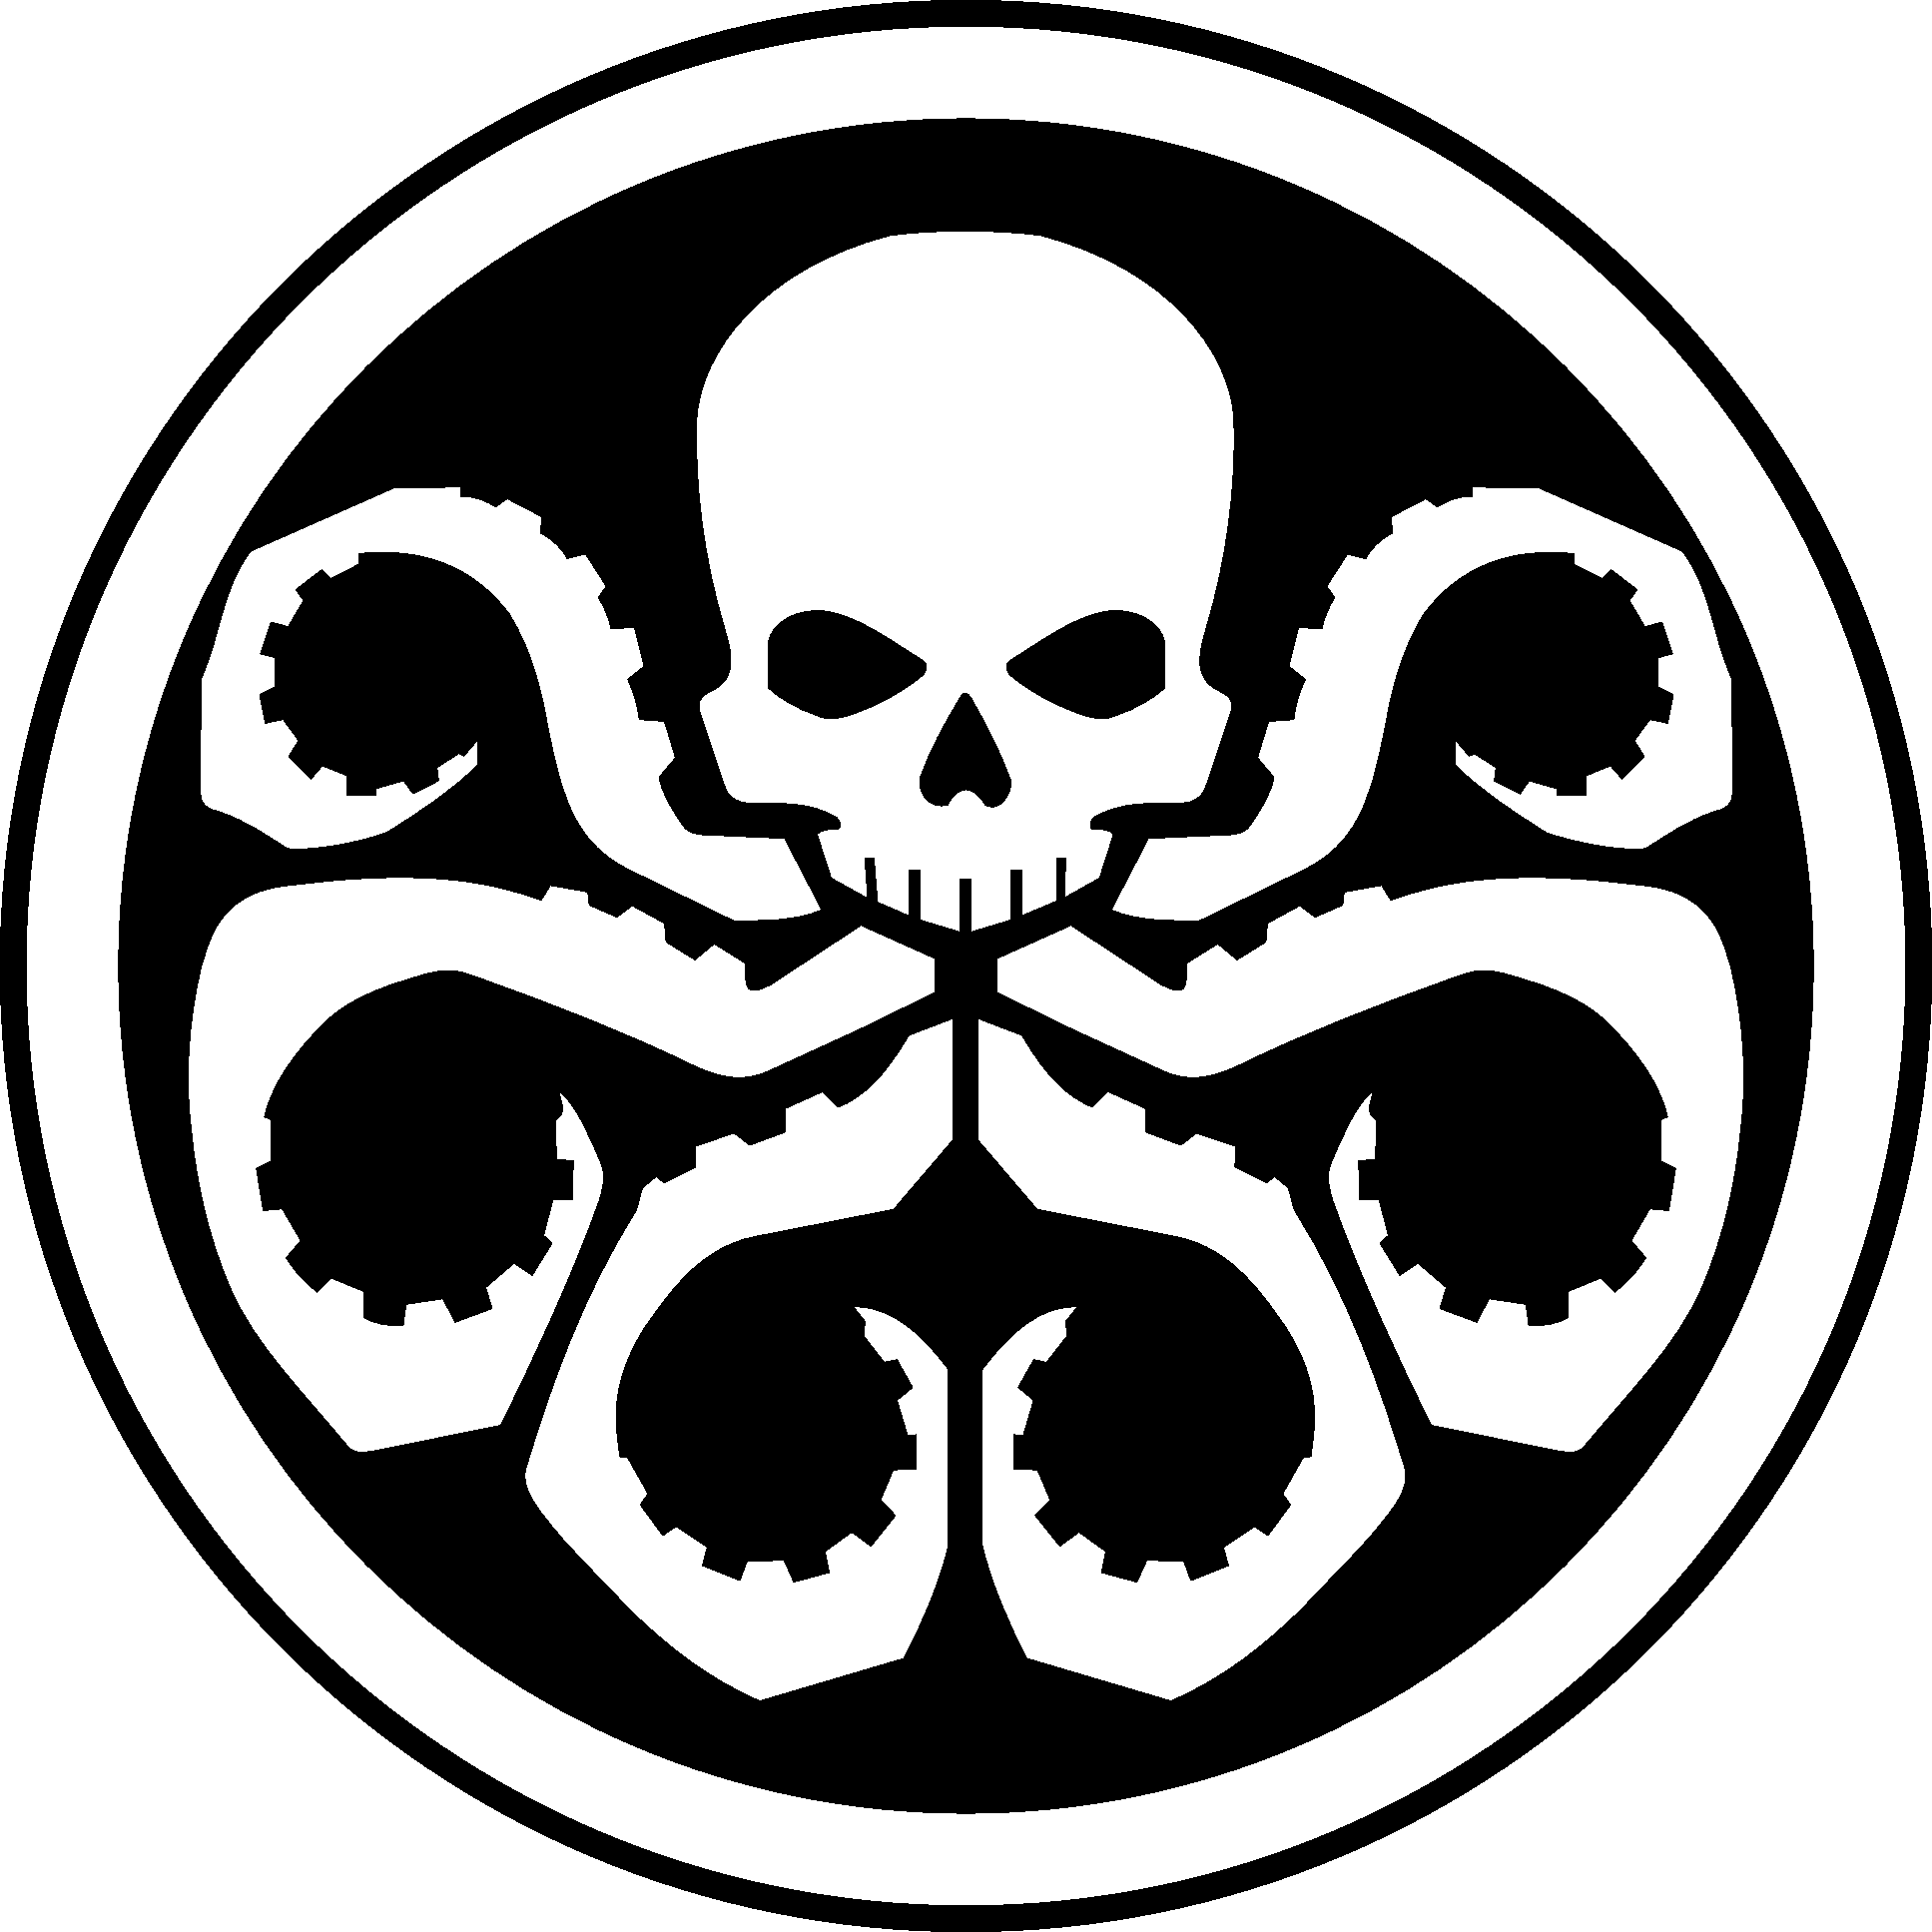 Hydra logo درع صورة شفافة